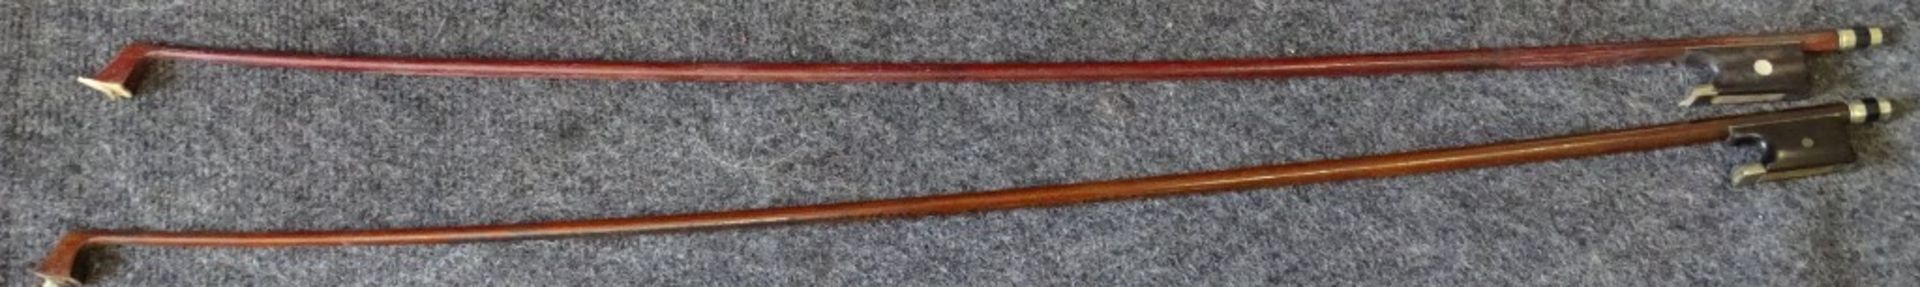 Geige, Stradivari Kopie,Modell Georg Schuster Markt Neukirchen mit Etikett in Geigen Korpus,anbei - Bild 7 aus 10